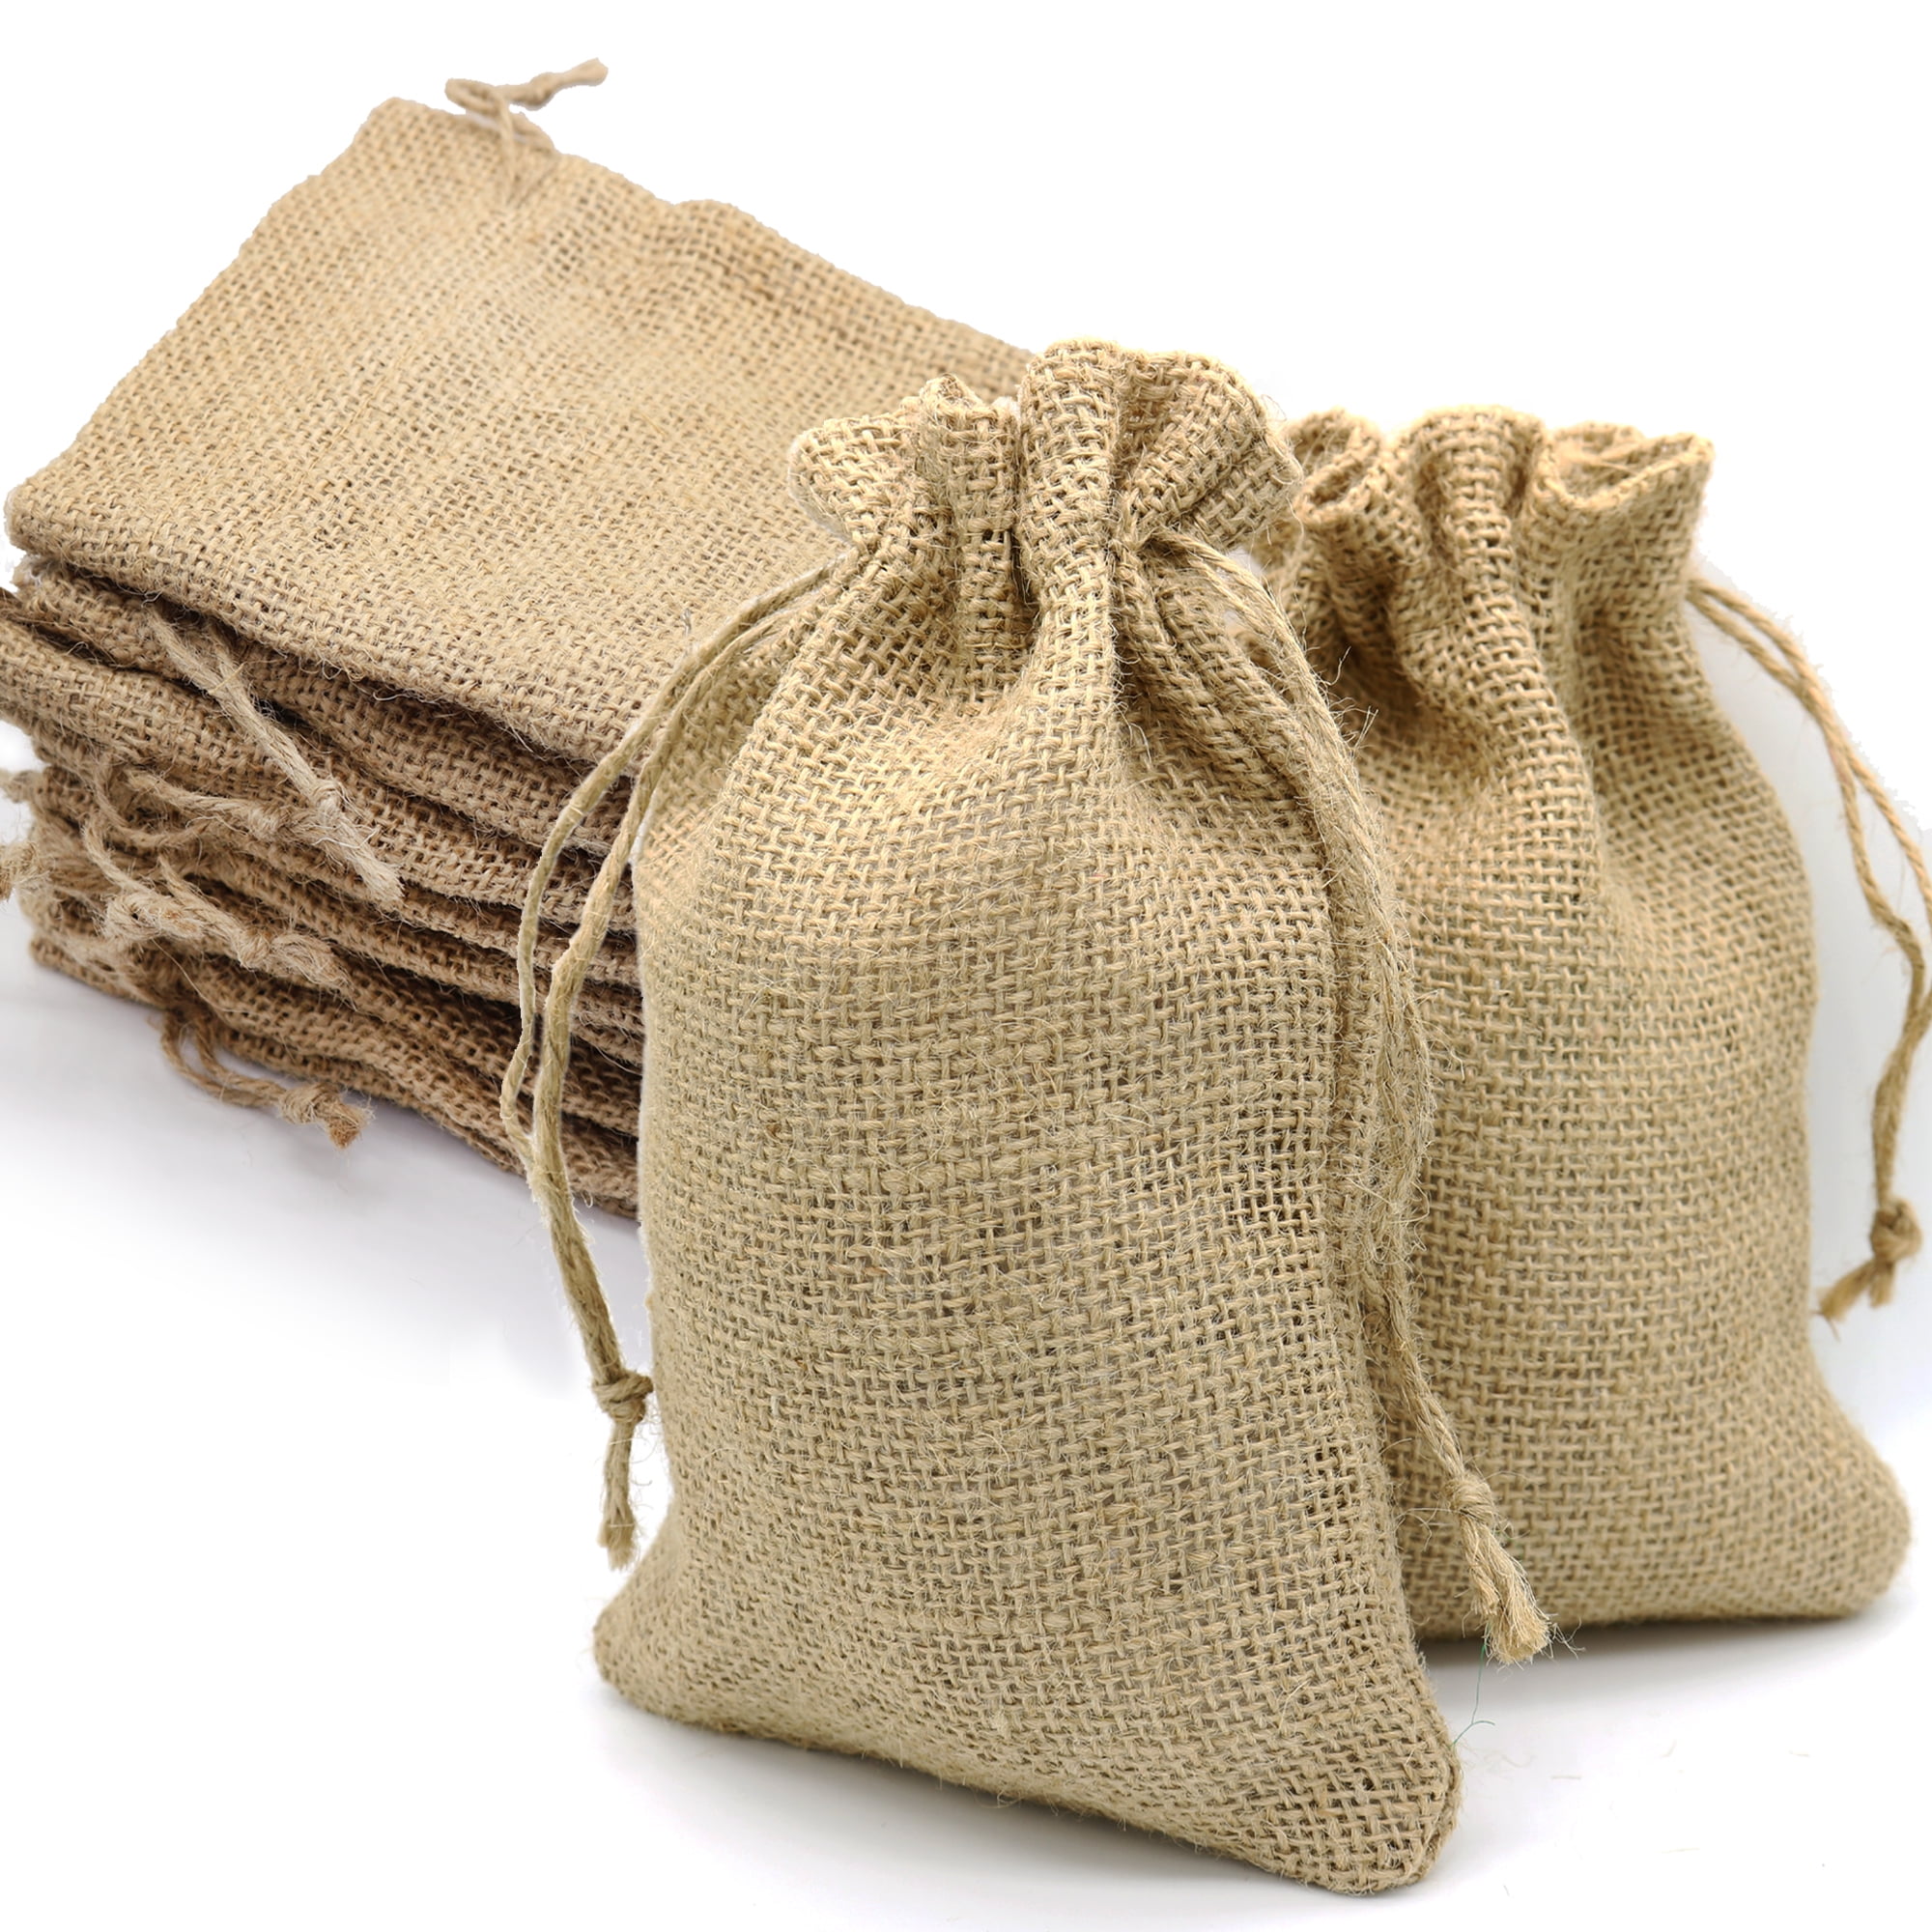 12-Pack Natural Burlap Jute Gift Bags with Drawstrings 